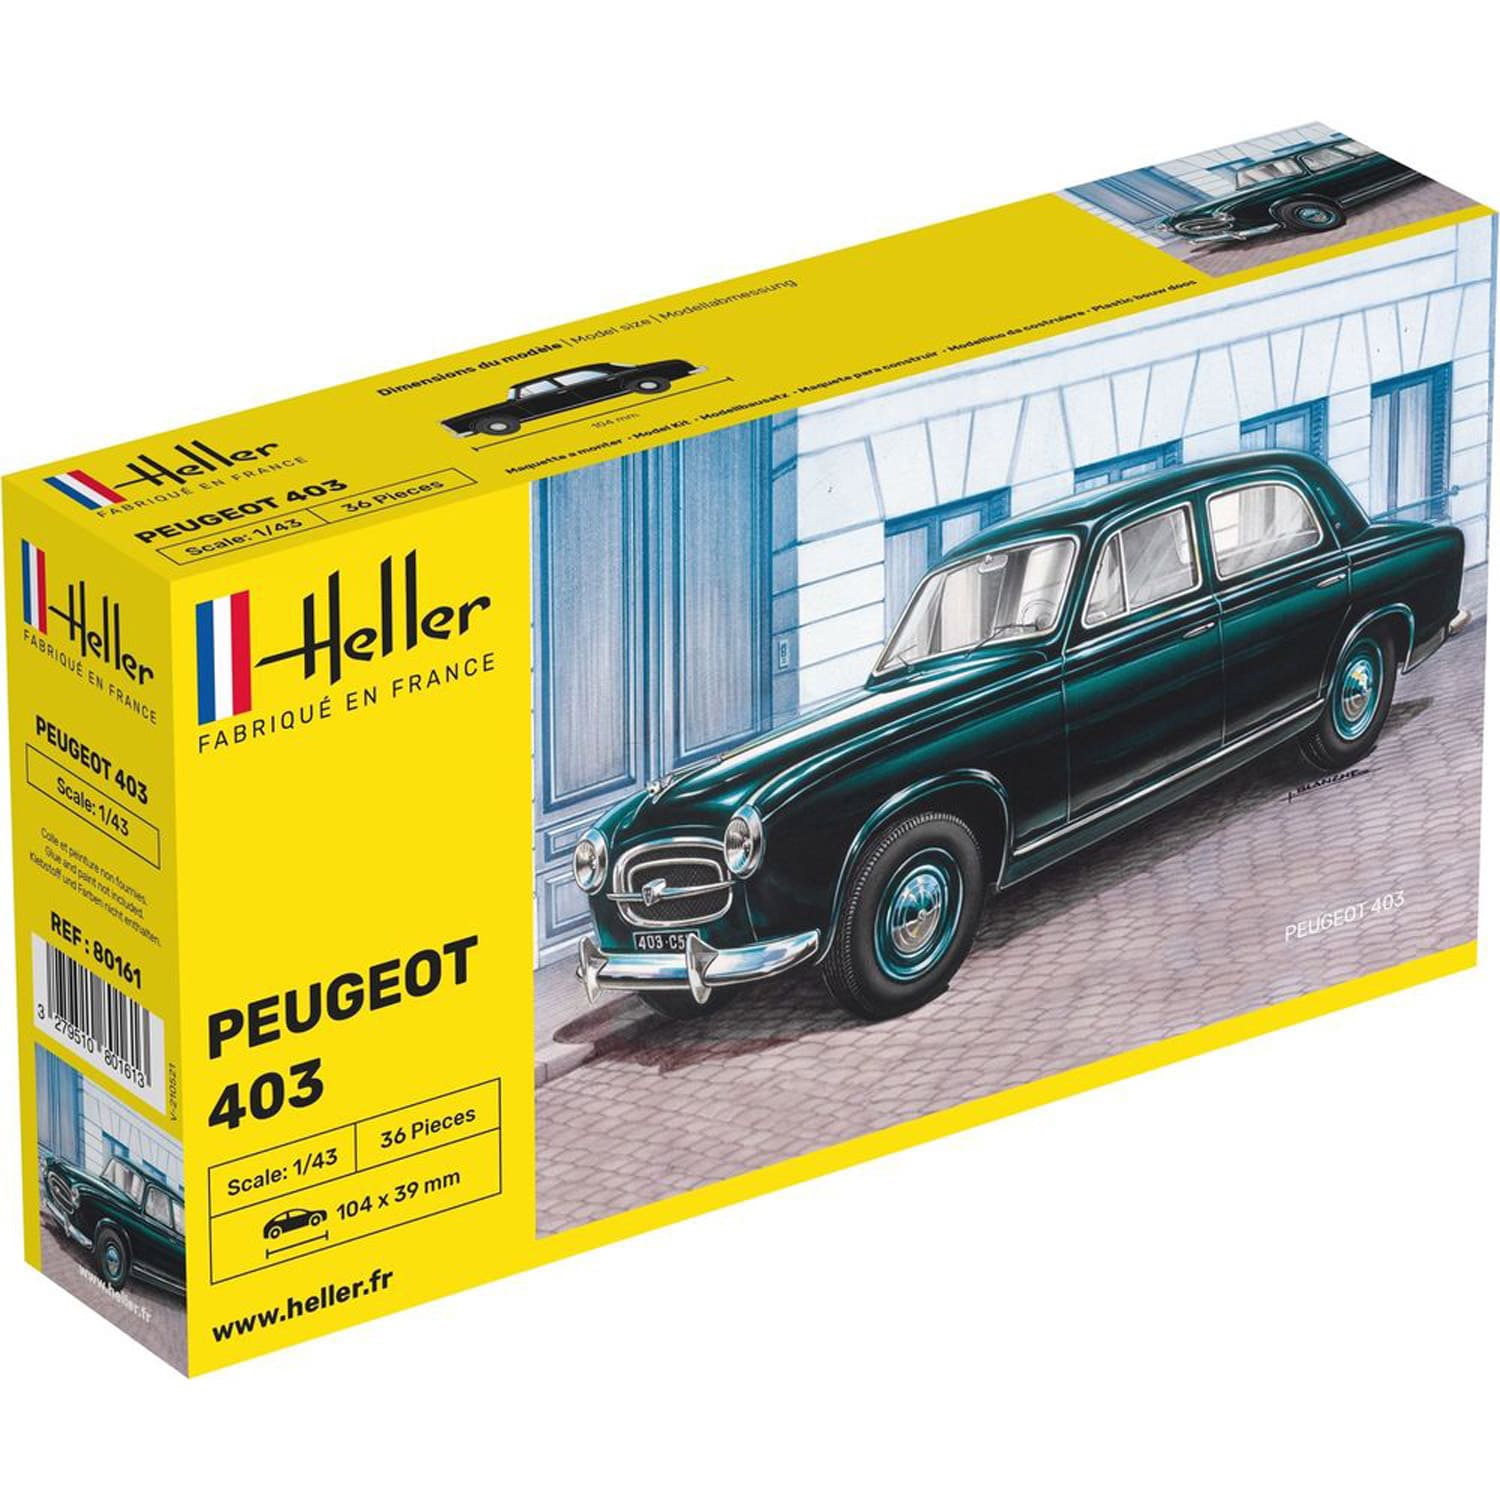 Maquette voiture : Peugeot 403 - Jeux et jouets Heller - Avenue des Jeux